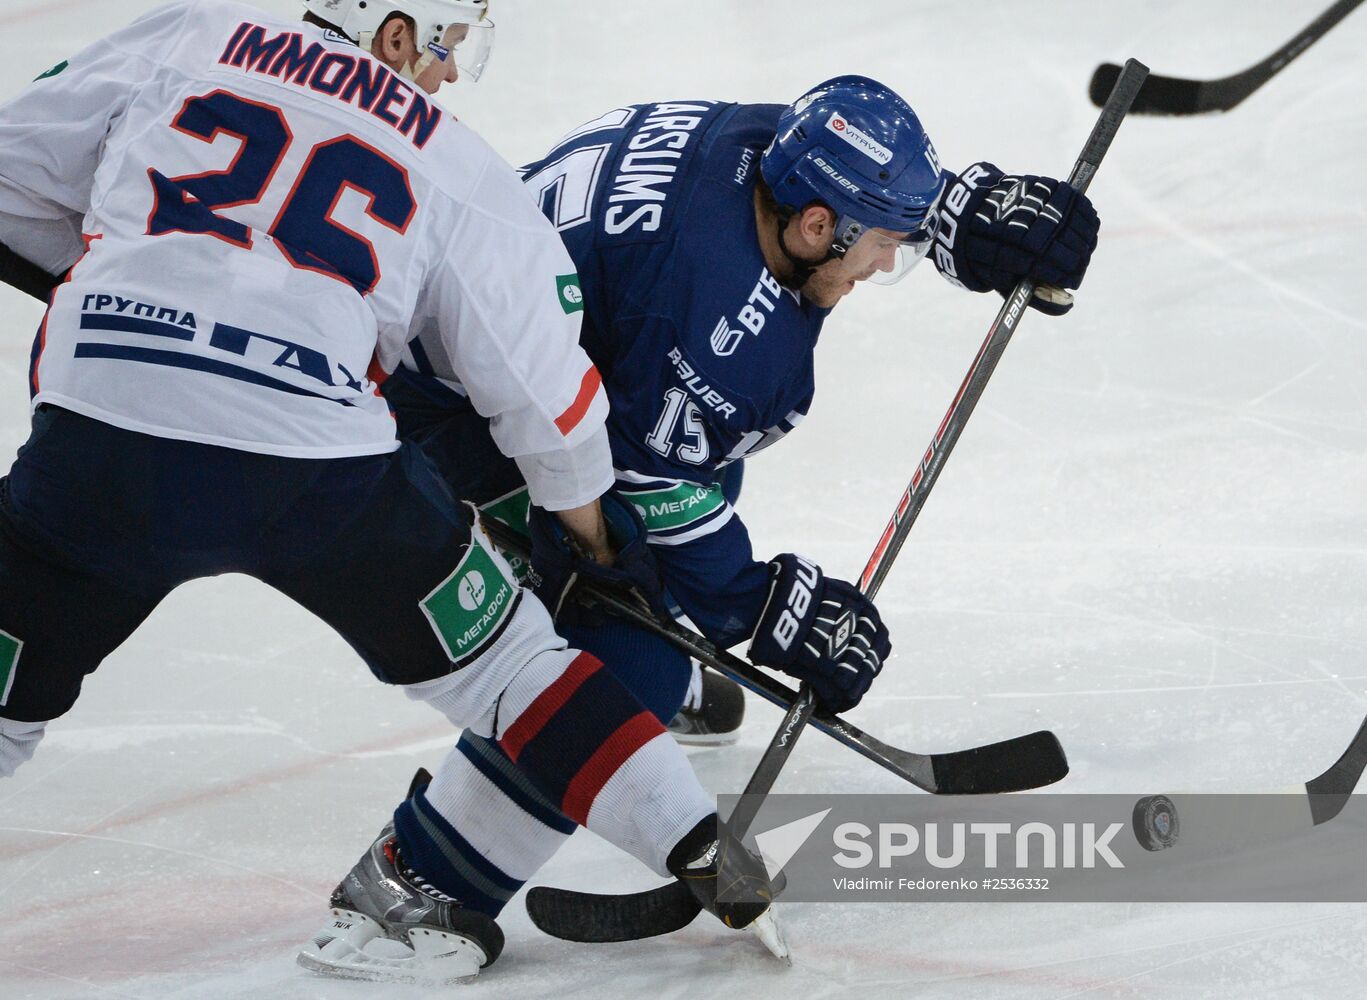 KHL. Dynamo Moscow vs. Torpedo Nizhny Novgorod